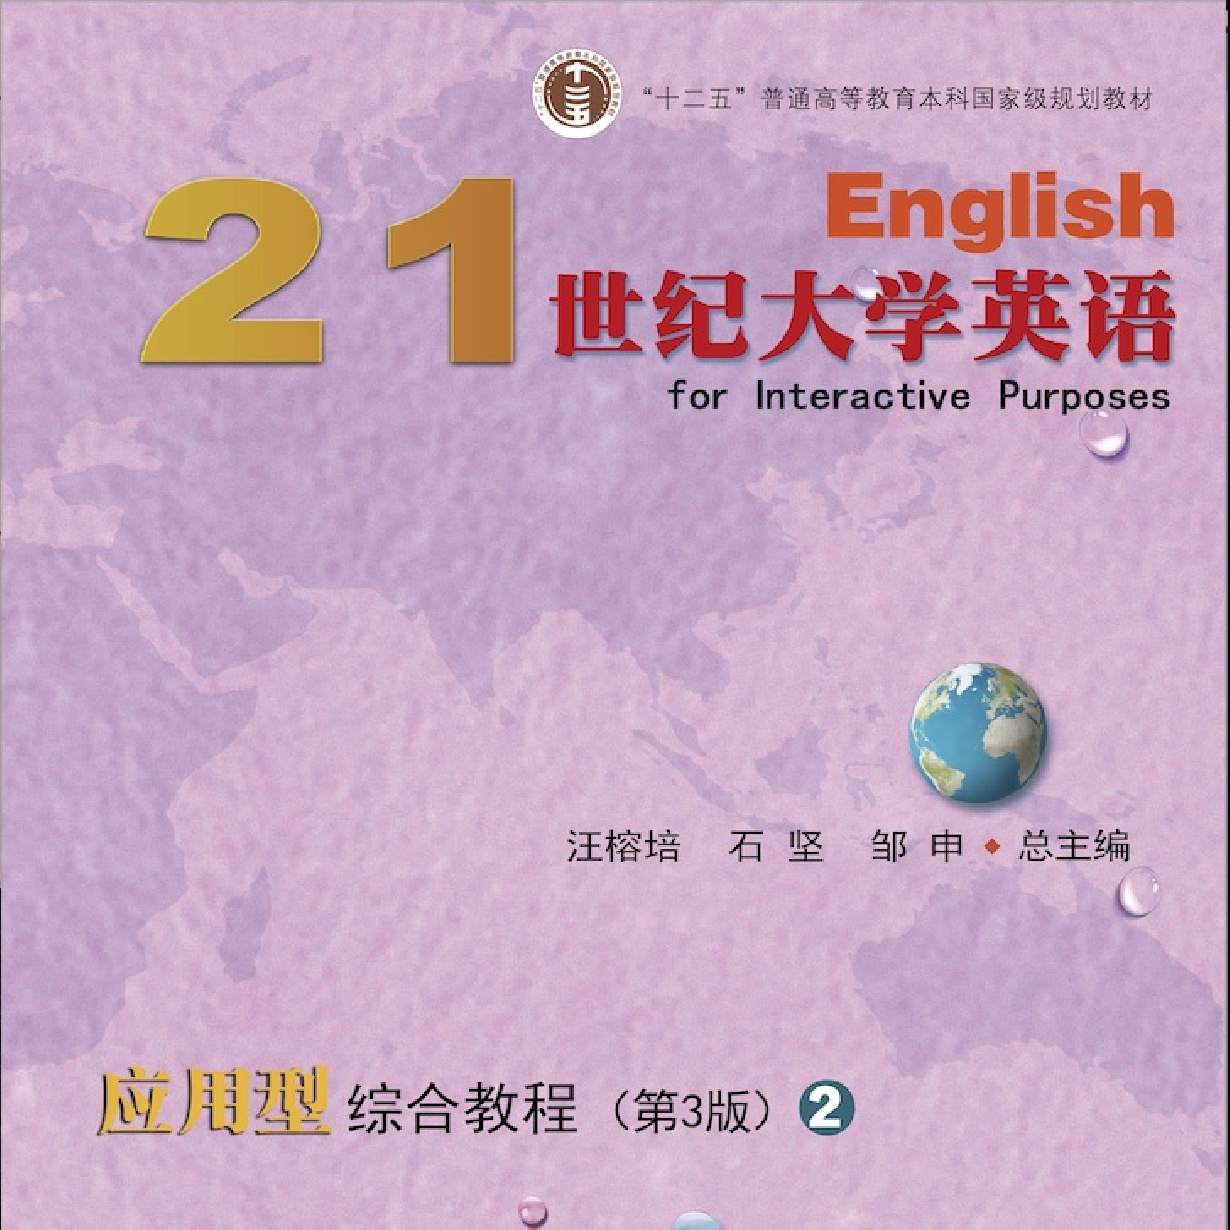 【视听包】21世纪大学英语应用型综合教程（第3版）2.mp3.mp4